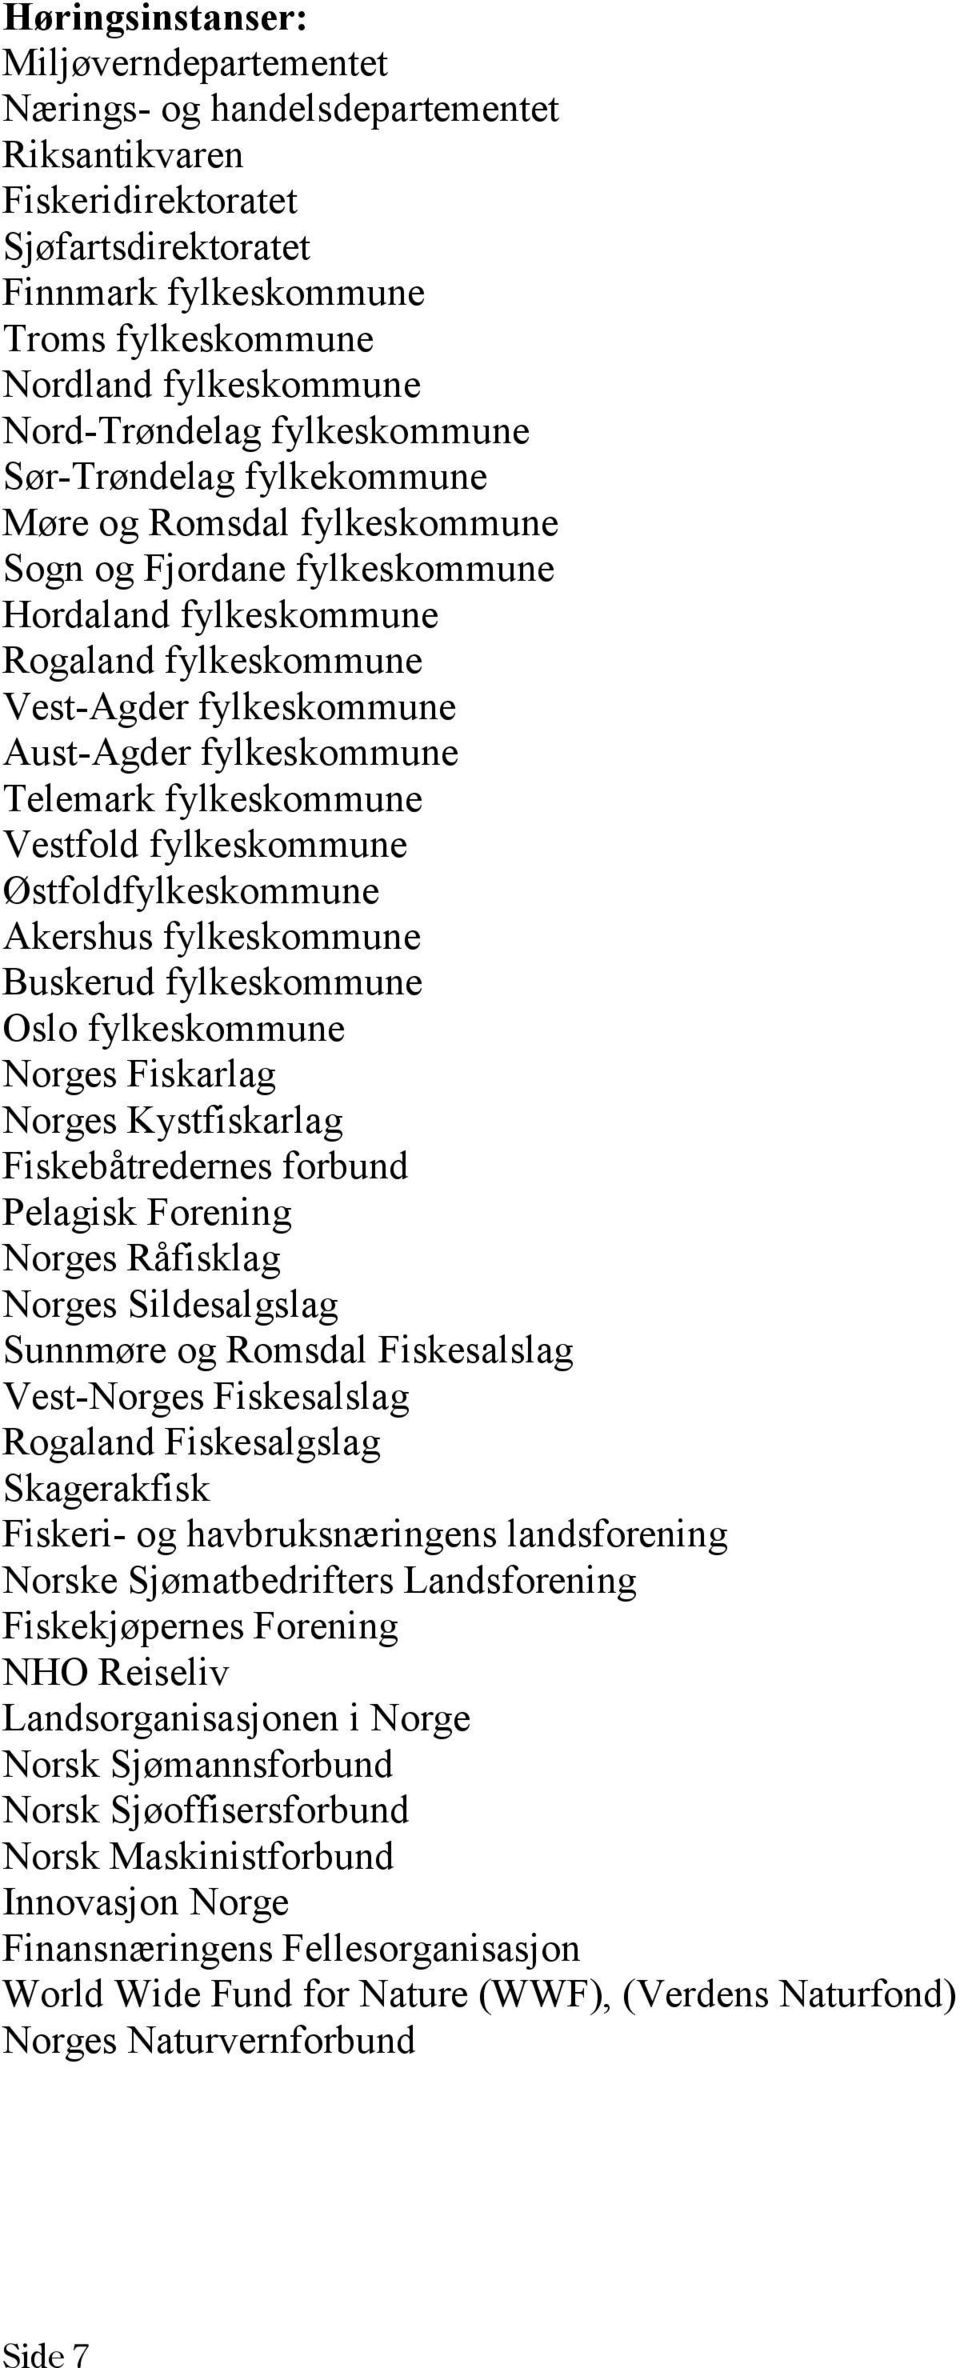 fylkeskommune Telemark fylkeskommune Vestfold fylkeskommune Østfoldfylkeskommune Akershus fylkeskommune Buskerud fylkeskommune Oslo fylkeskommune Norges Fiskarlag Norges Kystfiskarlag